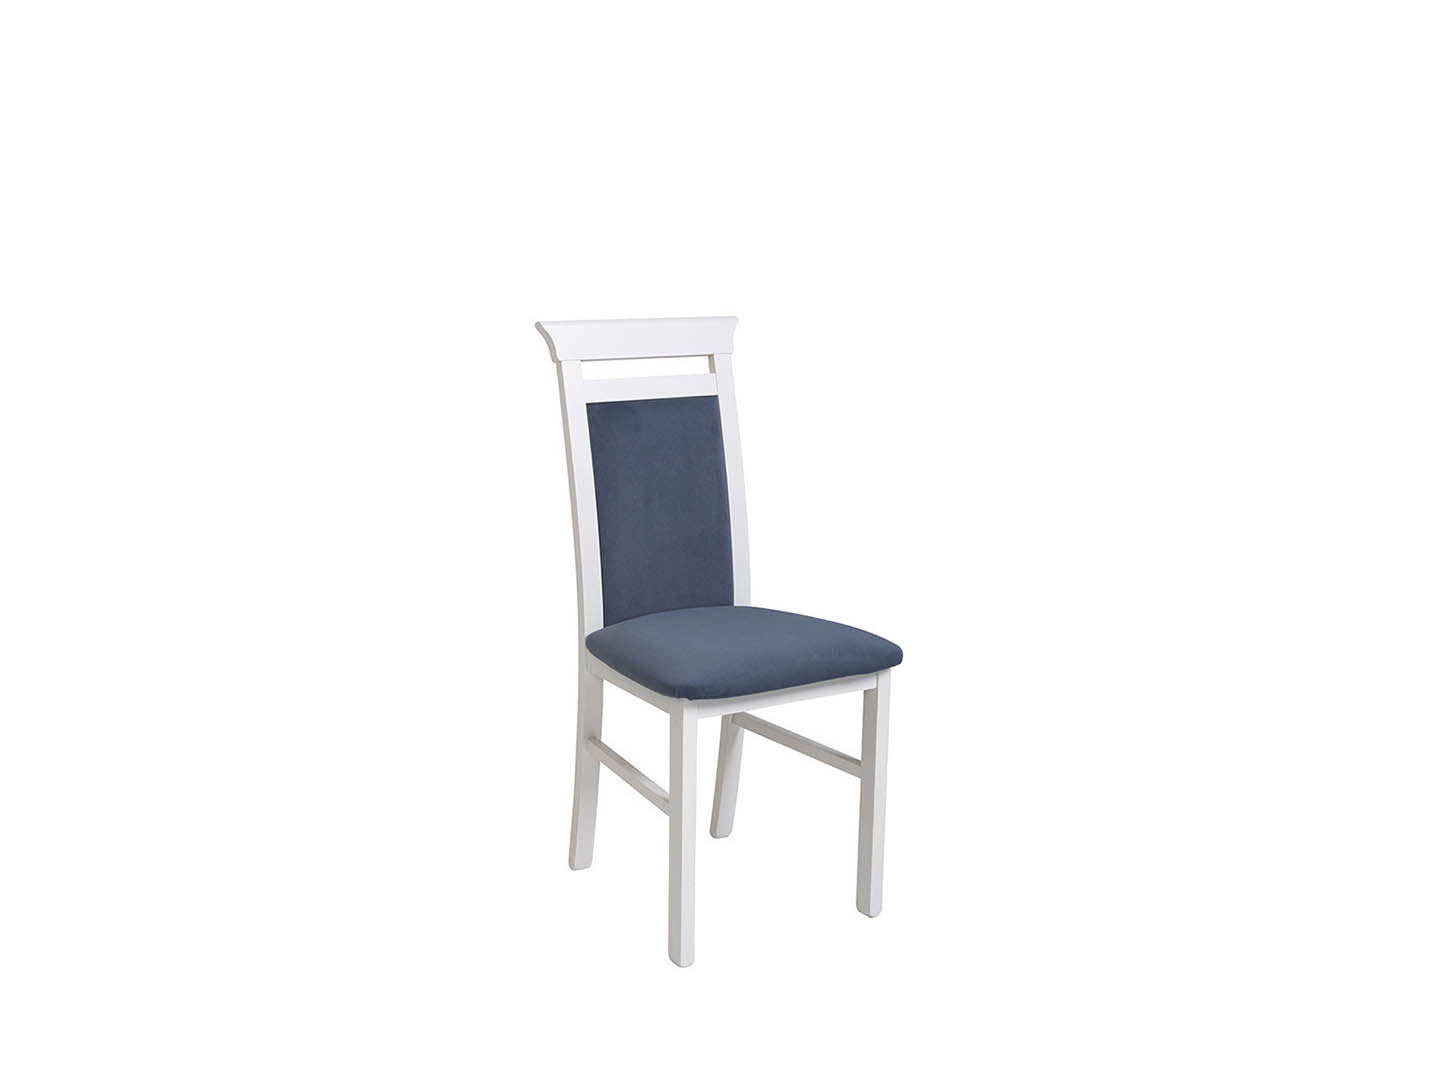 Stuhl IDENT - ALPENWEISS / DARK BLUE IDENT Tische und Stühle Echtholz Stuhl Galleriebild Gross